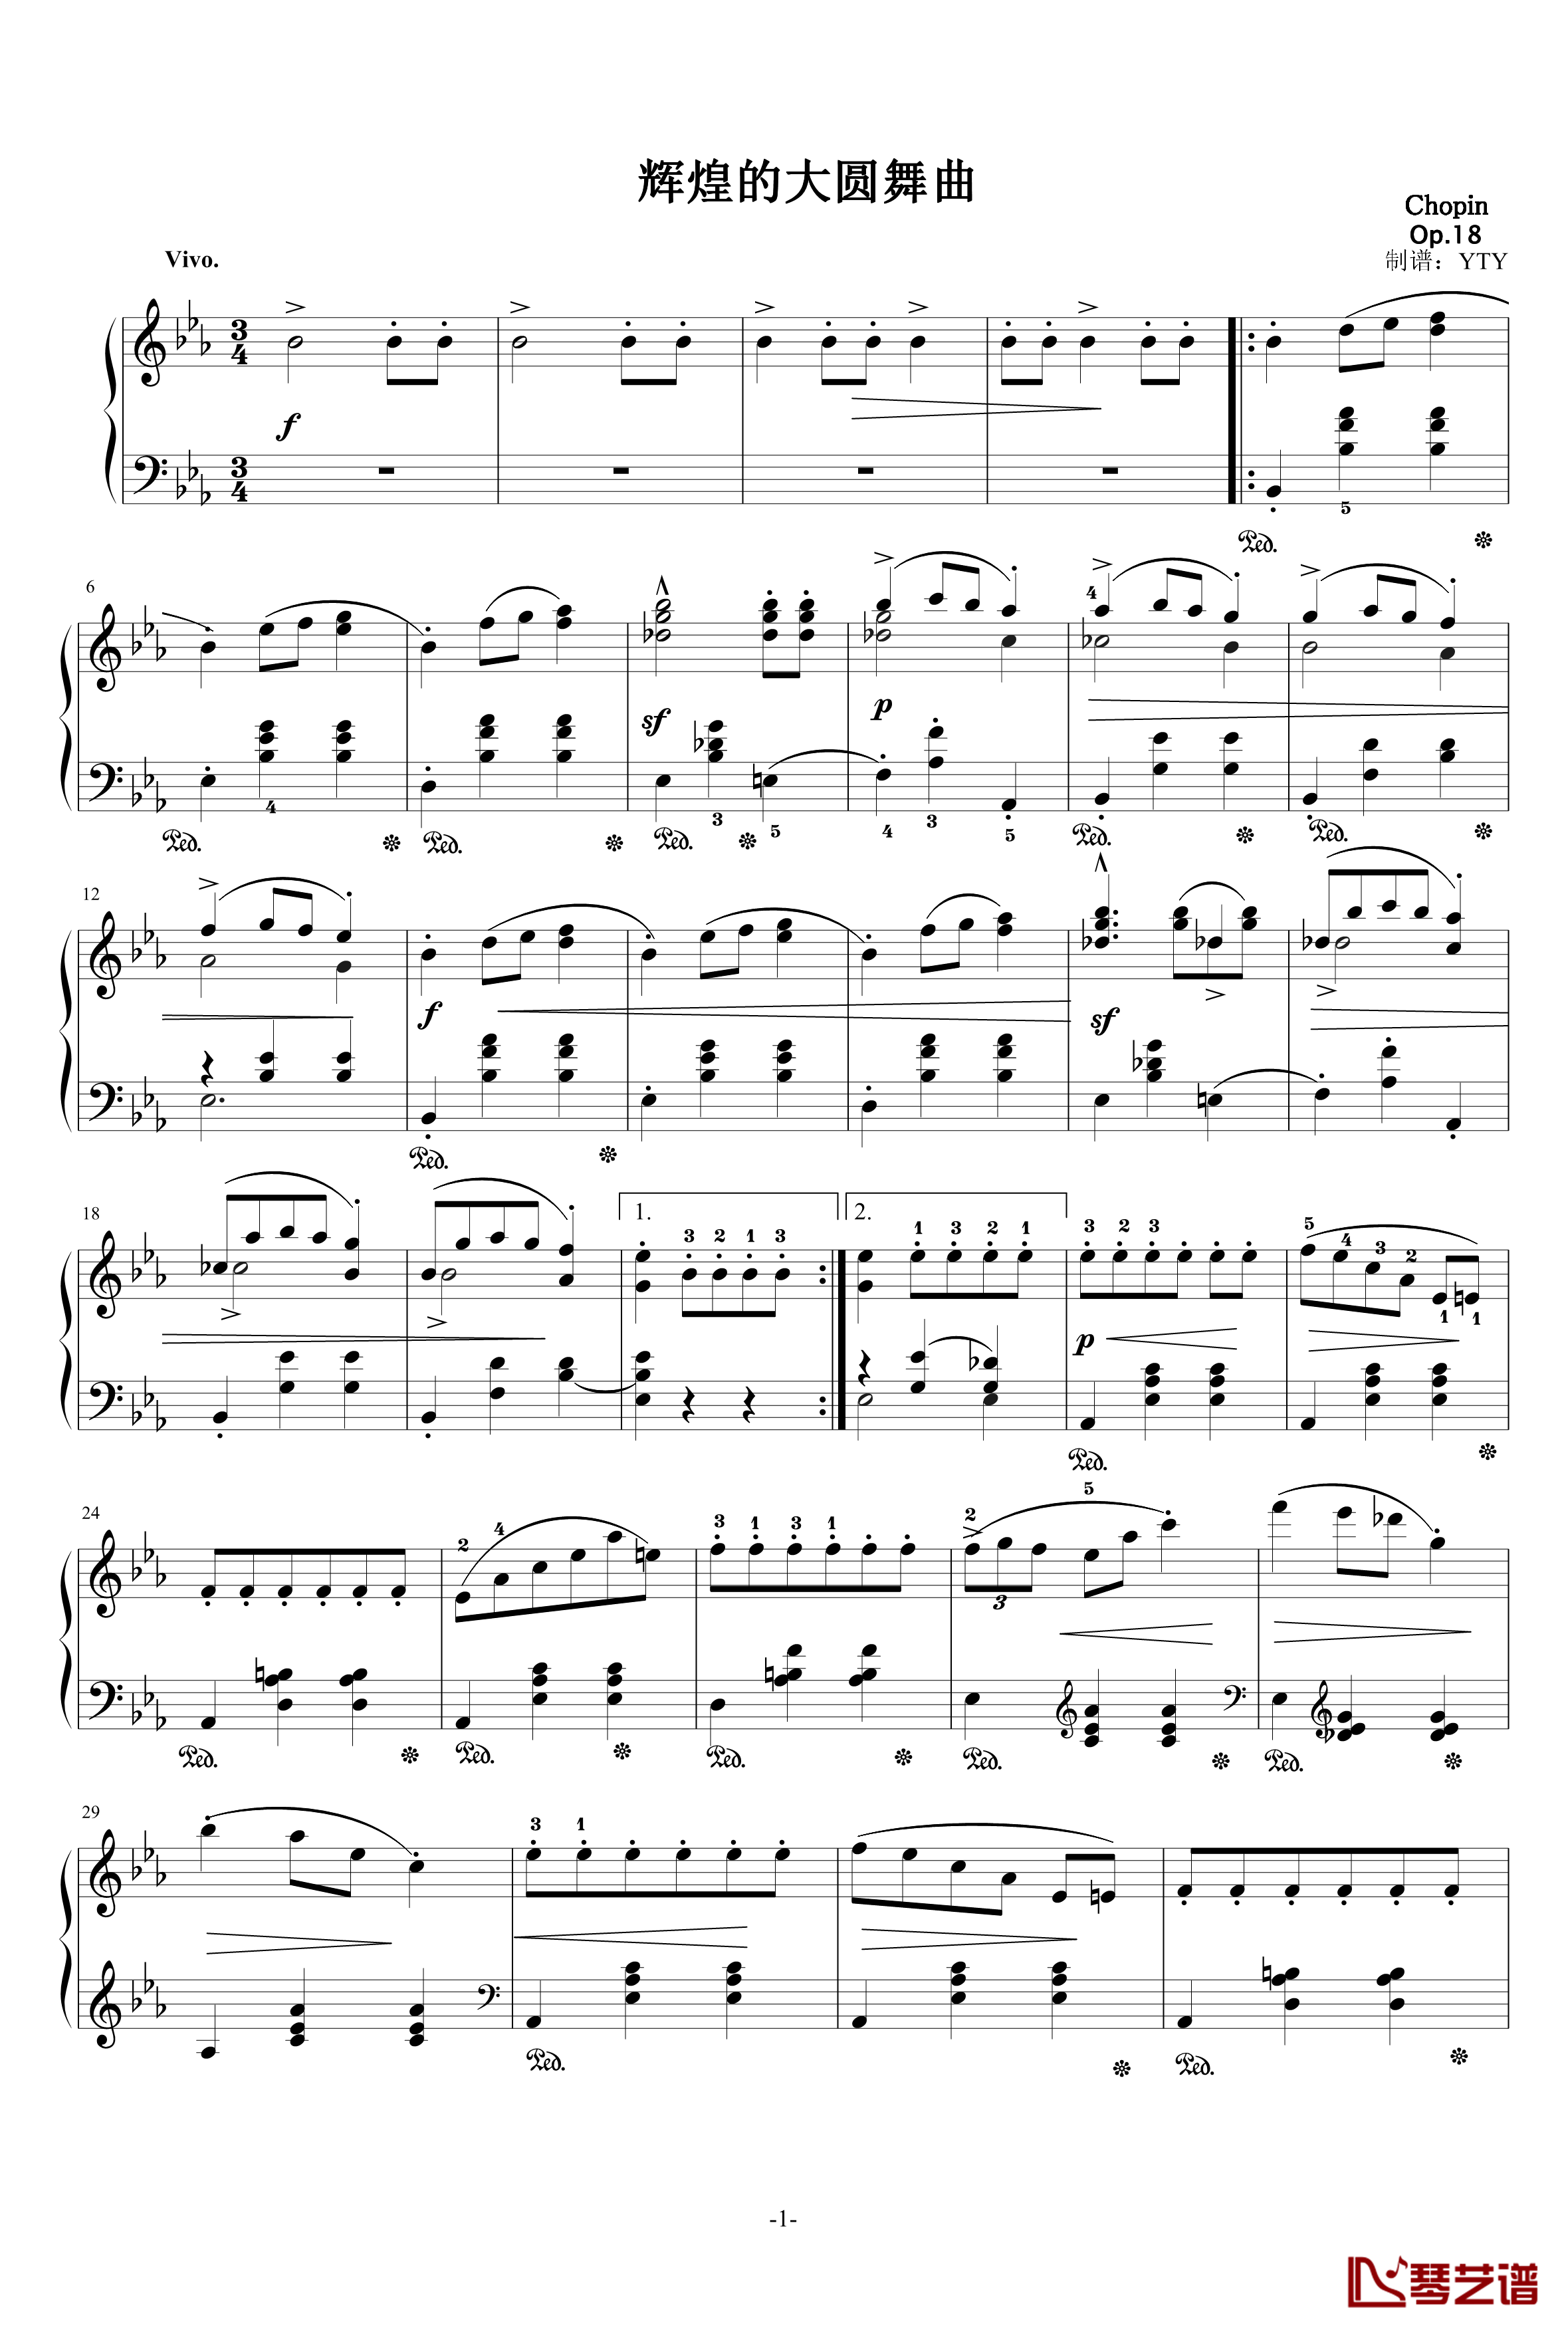 降E大调华丽大圆舞曲Op.18钢琴谱-肖邦-chopin1